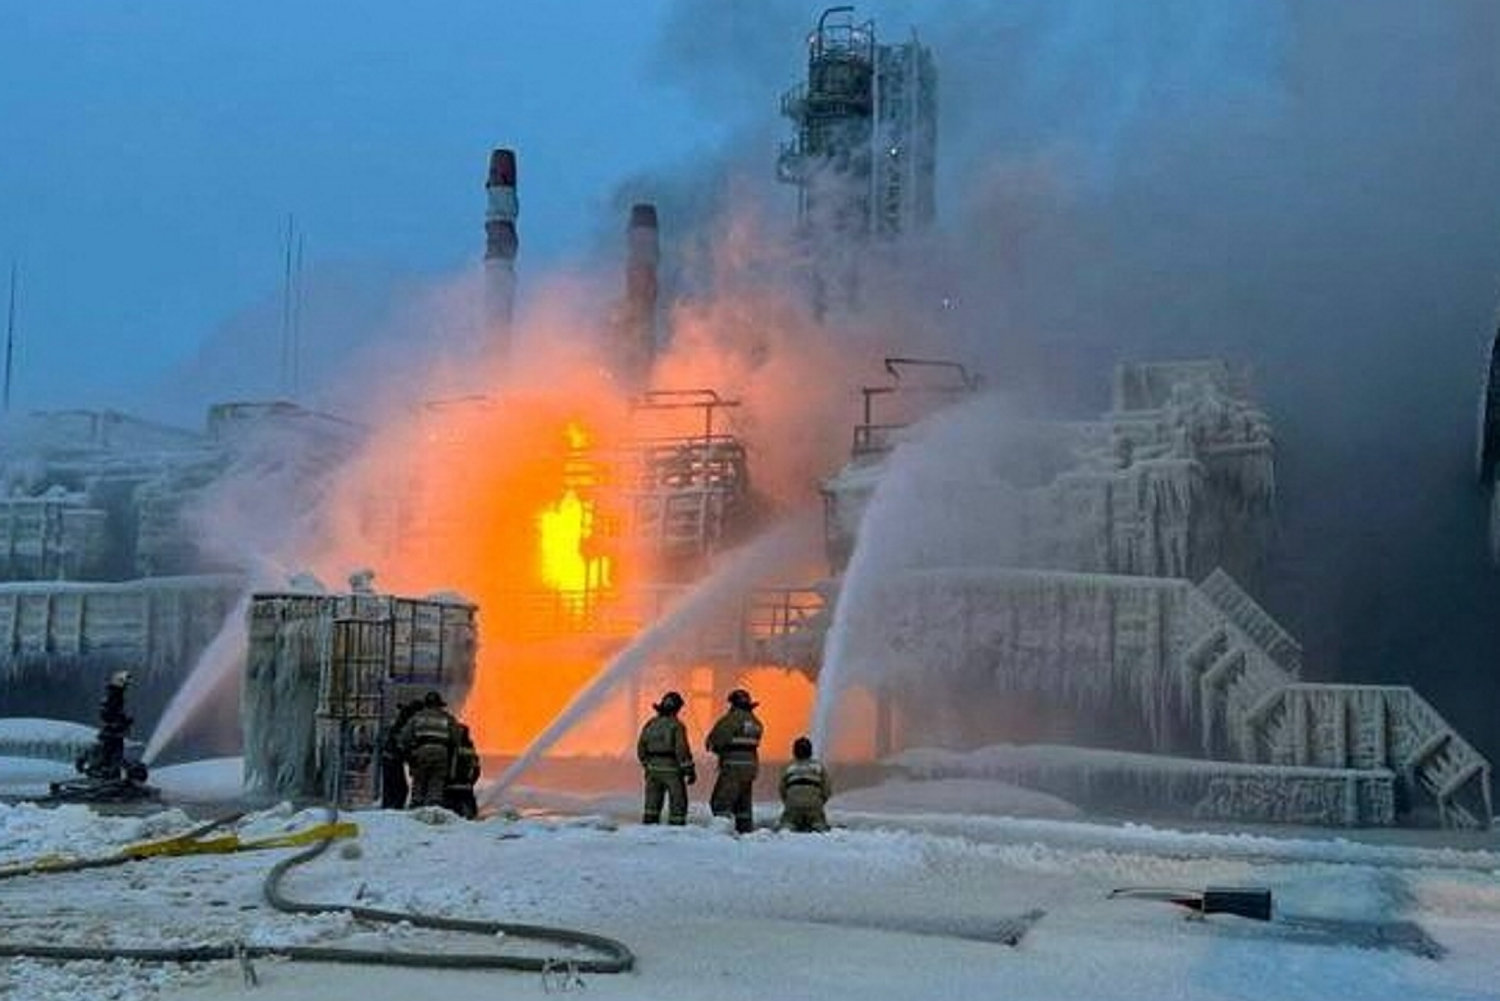 russisk naturgasterminal ved østersøen er sat i stå efter brand